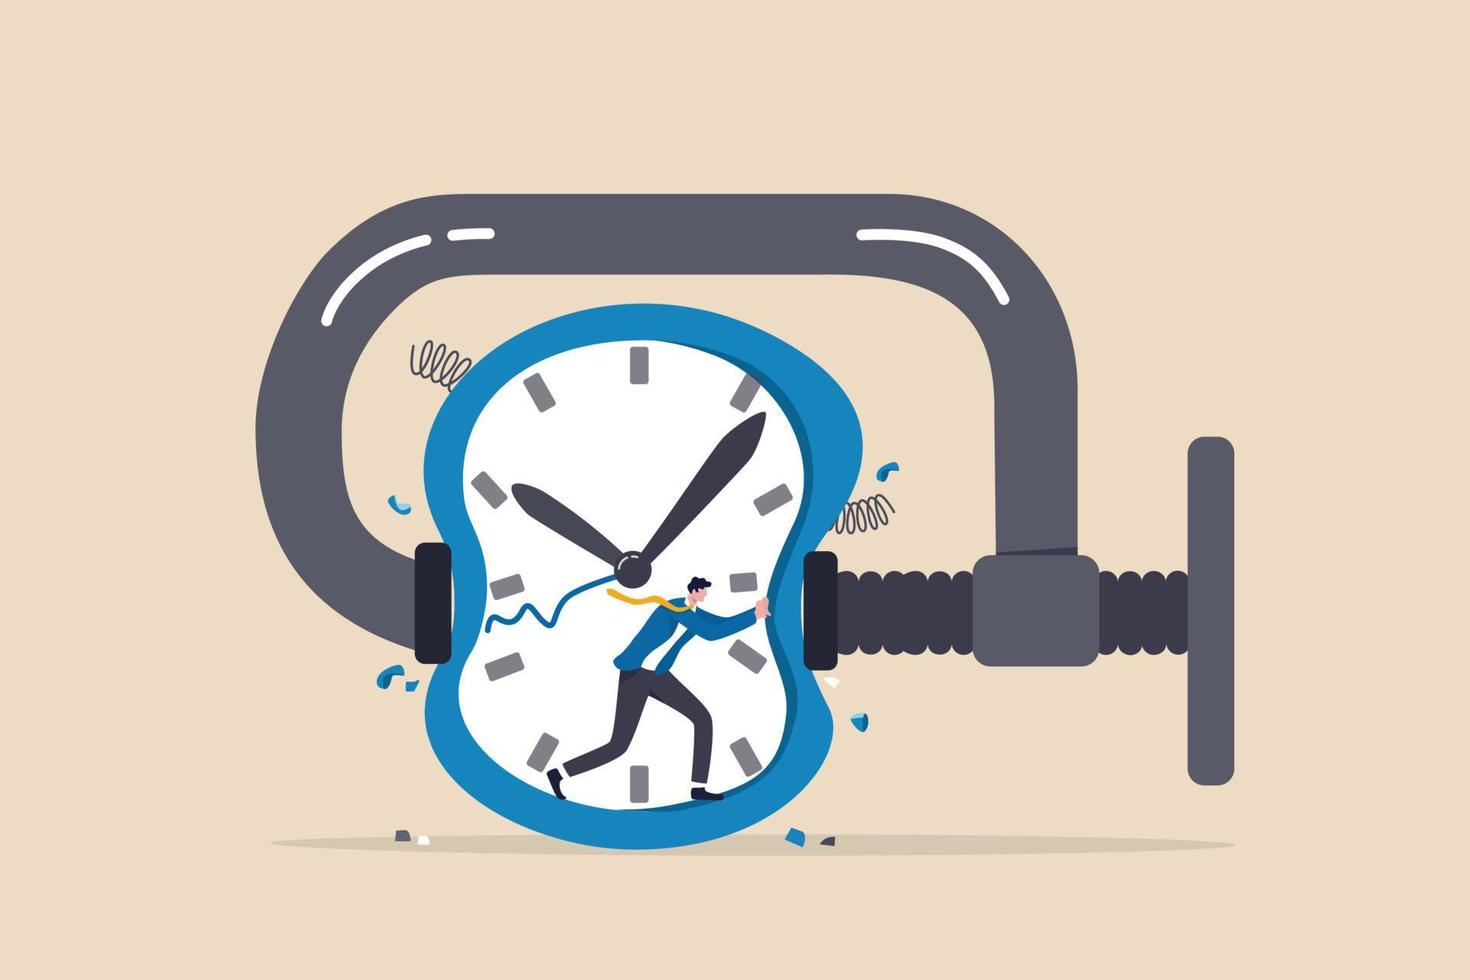 tijdsdruk of bijna geen tijd, stress of angst om het werk af te maken binnen een agressieve deadline of tijdmanagementconcept, gefrustreerde zakenman probeert de geperste timerklok te stoppen. vector